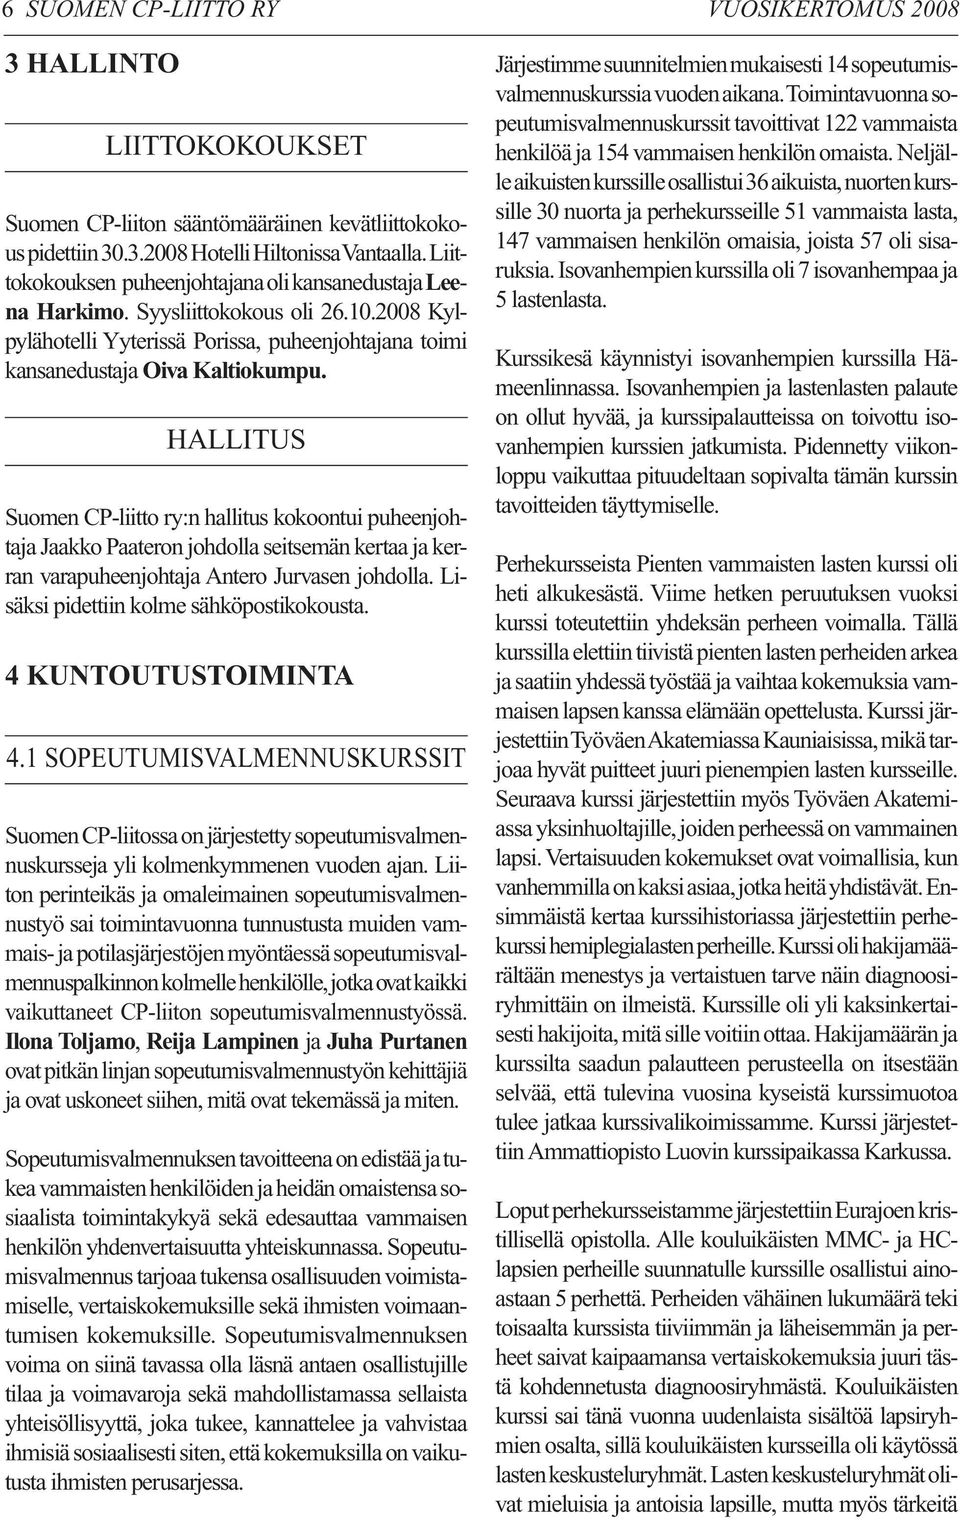 HALLITUS Suomen CP-liitto ry:n hallitus kokoontui puheenjohtaja Jaakko Paateron johdolla seitsemän kertaa ja kerran varapuheenjohtaja Antero Jurvasen johdolla.